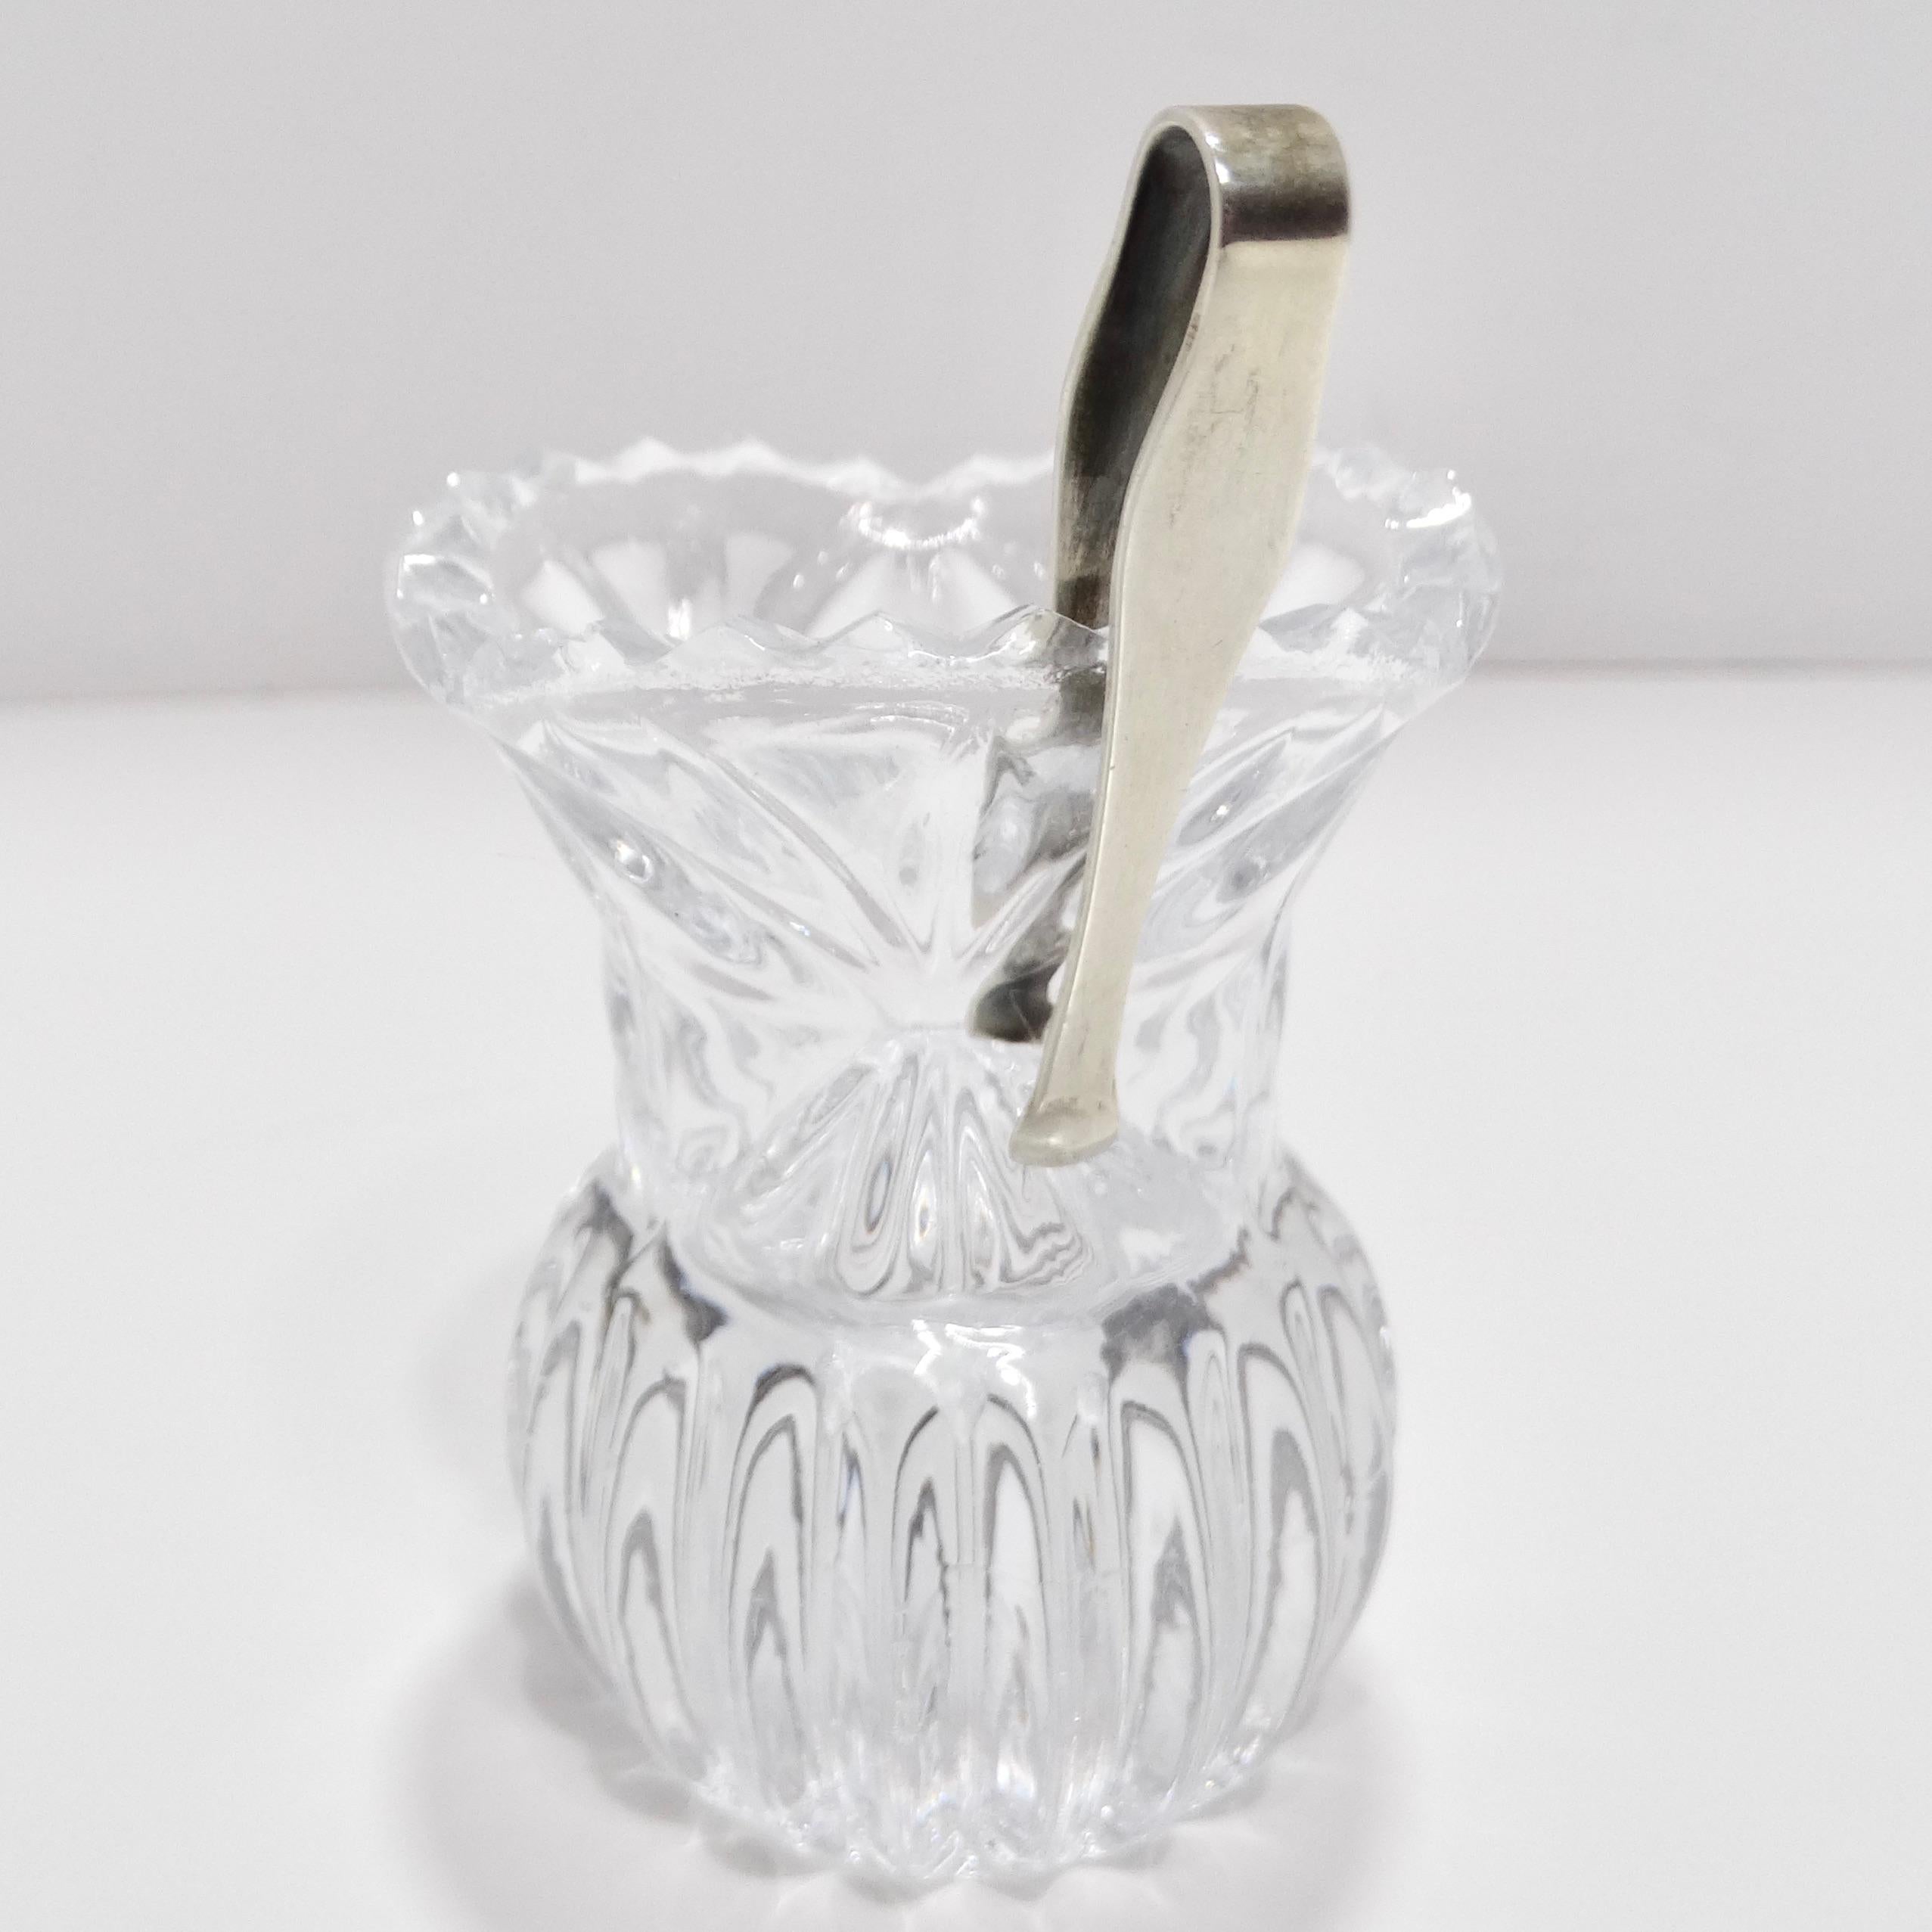 Der Zahnstocherhalter aus Antikkristall und die silberne Servierzange sind eine atemberaubende Kombination aus Schönheit und Funktionalität, die Ihrem Esserlebnis einen Hauch von Opulenz verleiht.

Der aus klarem Kristall gefertigte